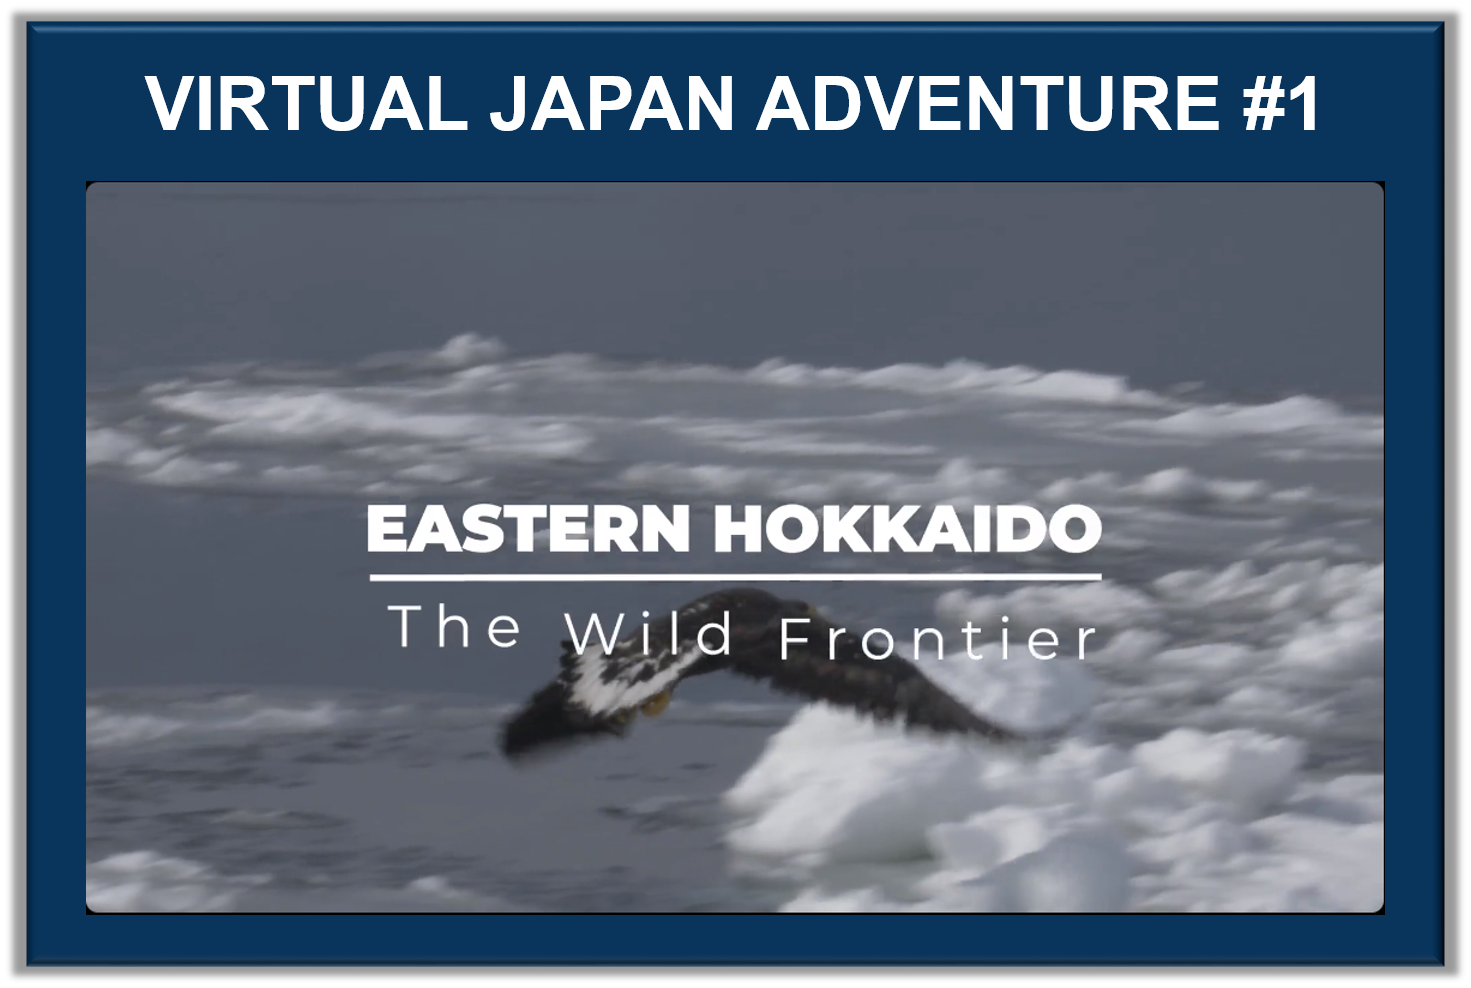 VJA #1: EASTERN HOKKAIDO - THE WILD FRONTIER